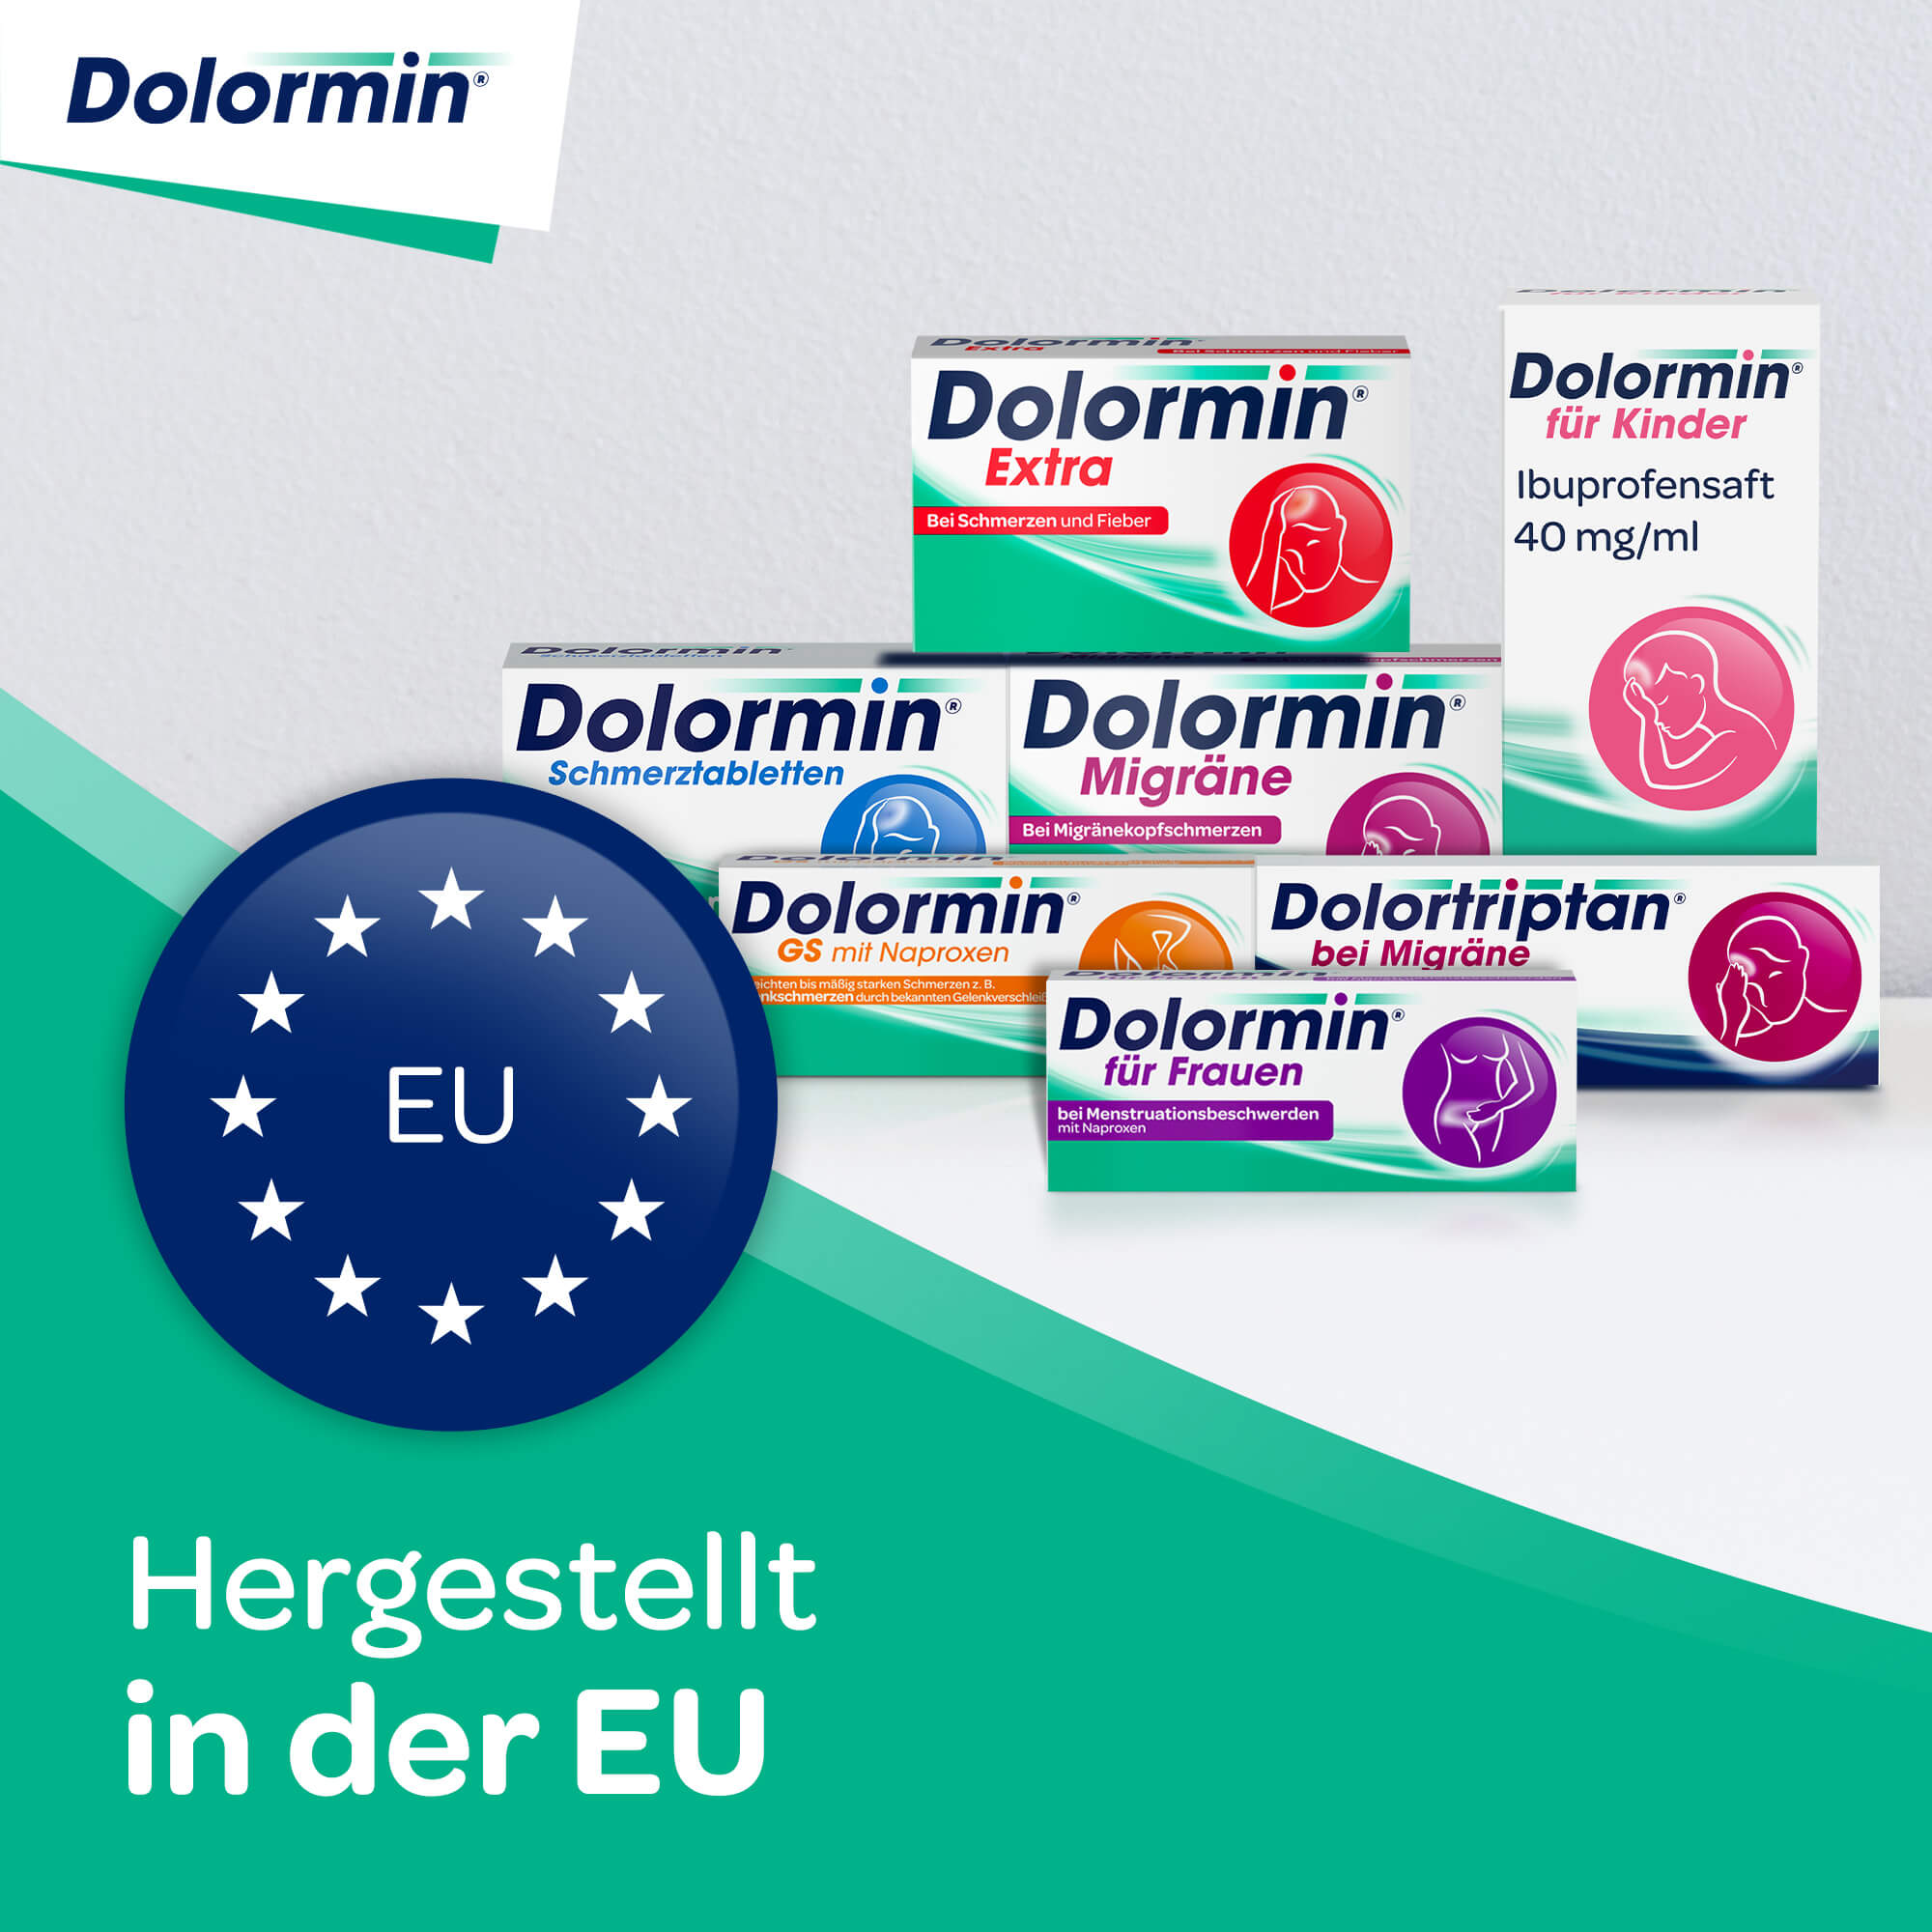 Dolormin - Hergestellt in der EU